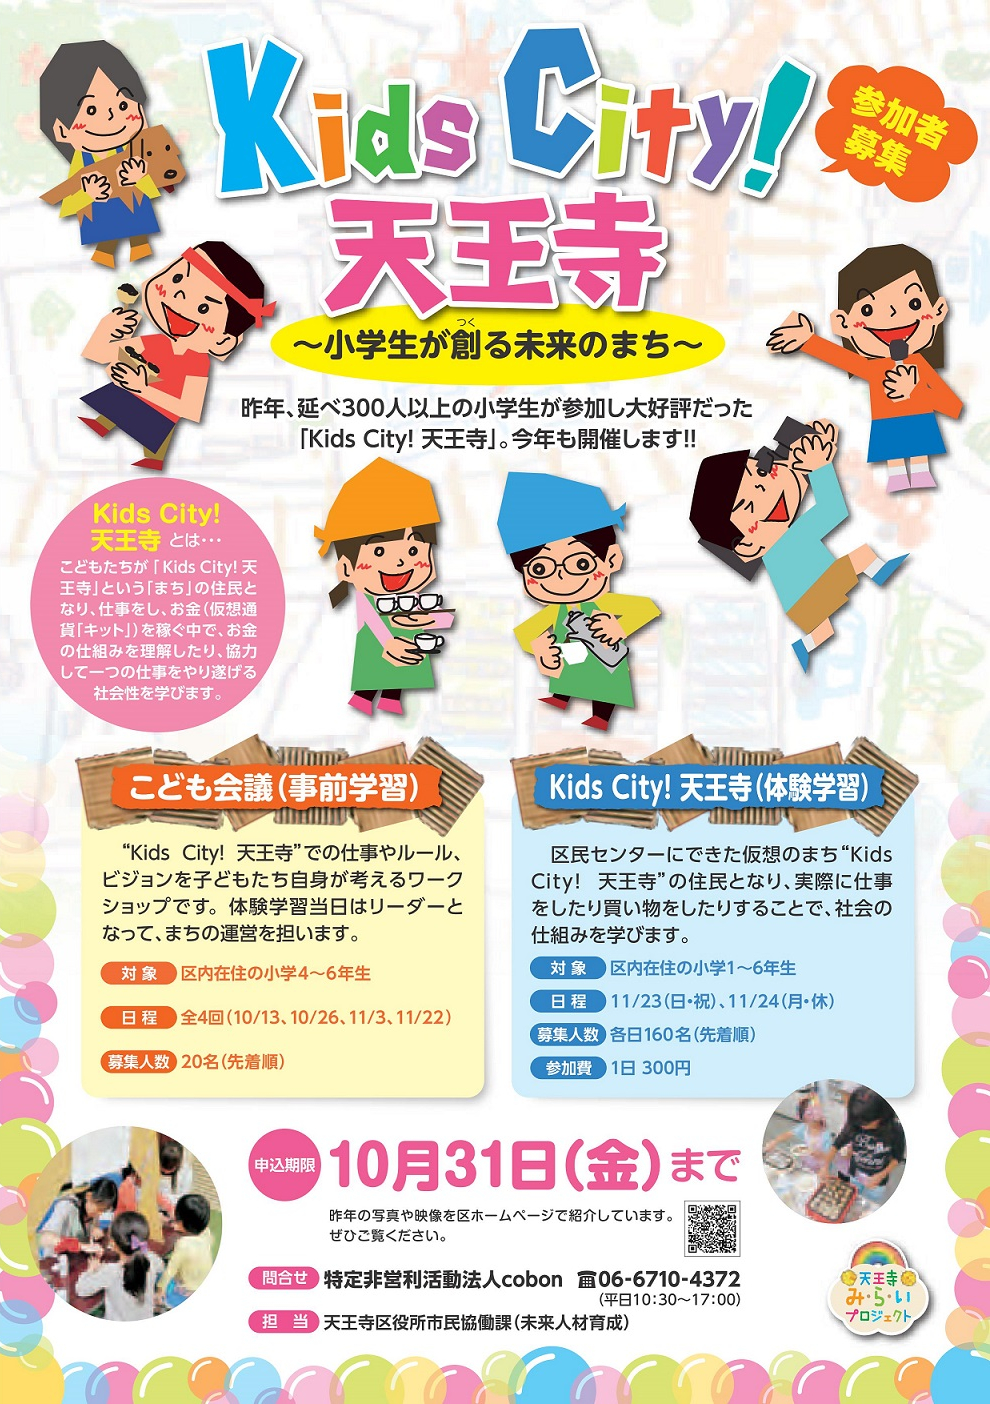 http://www.cobon.jp/news/2014/08/27/KidsCity_%E8%A1%A8.jpg